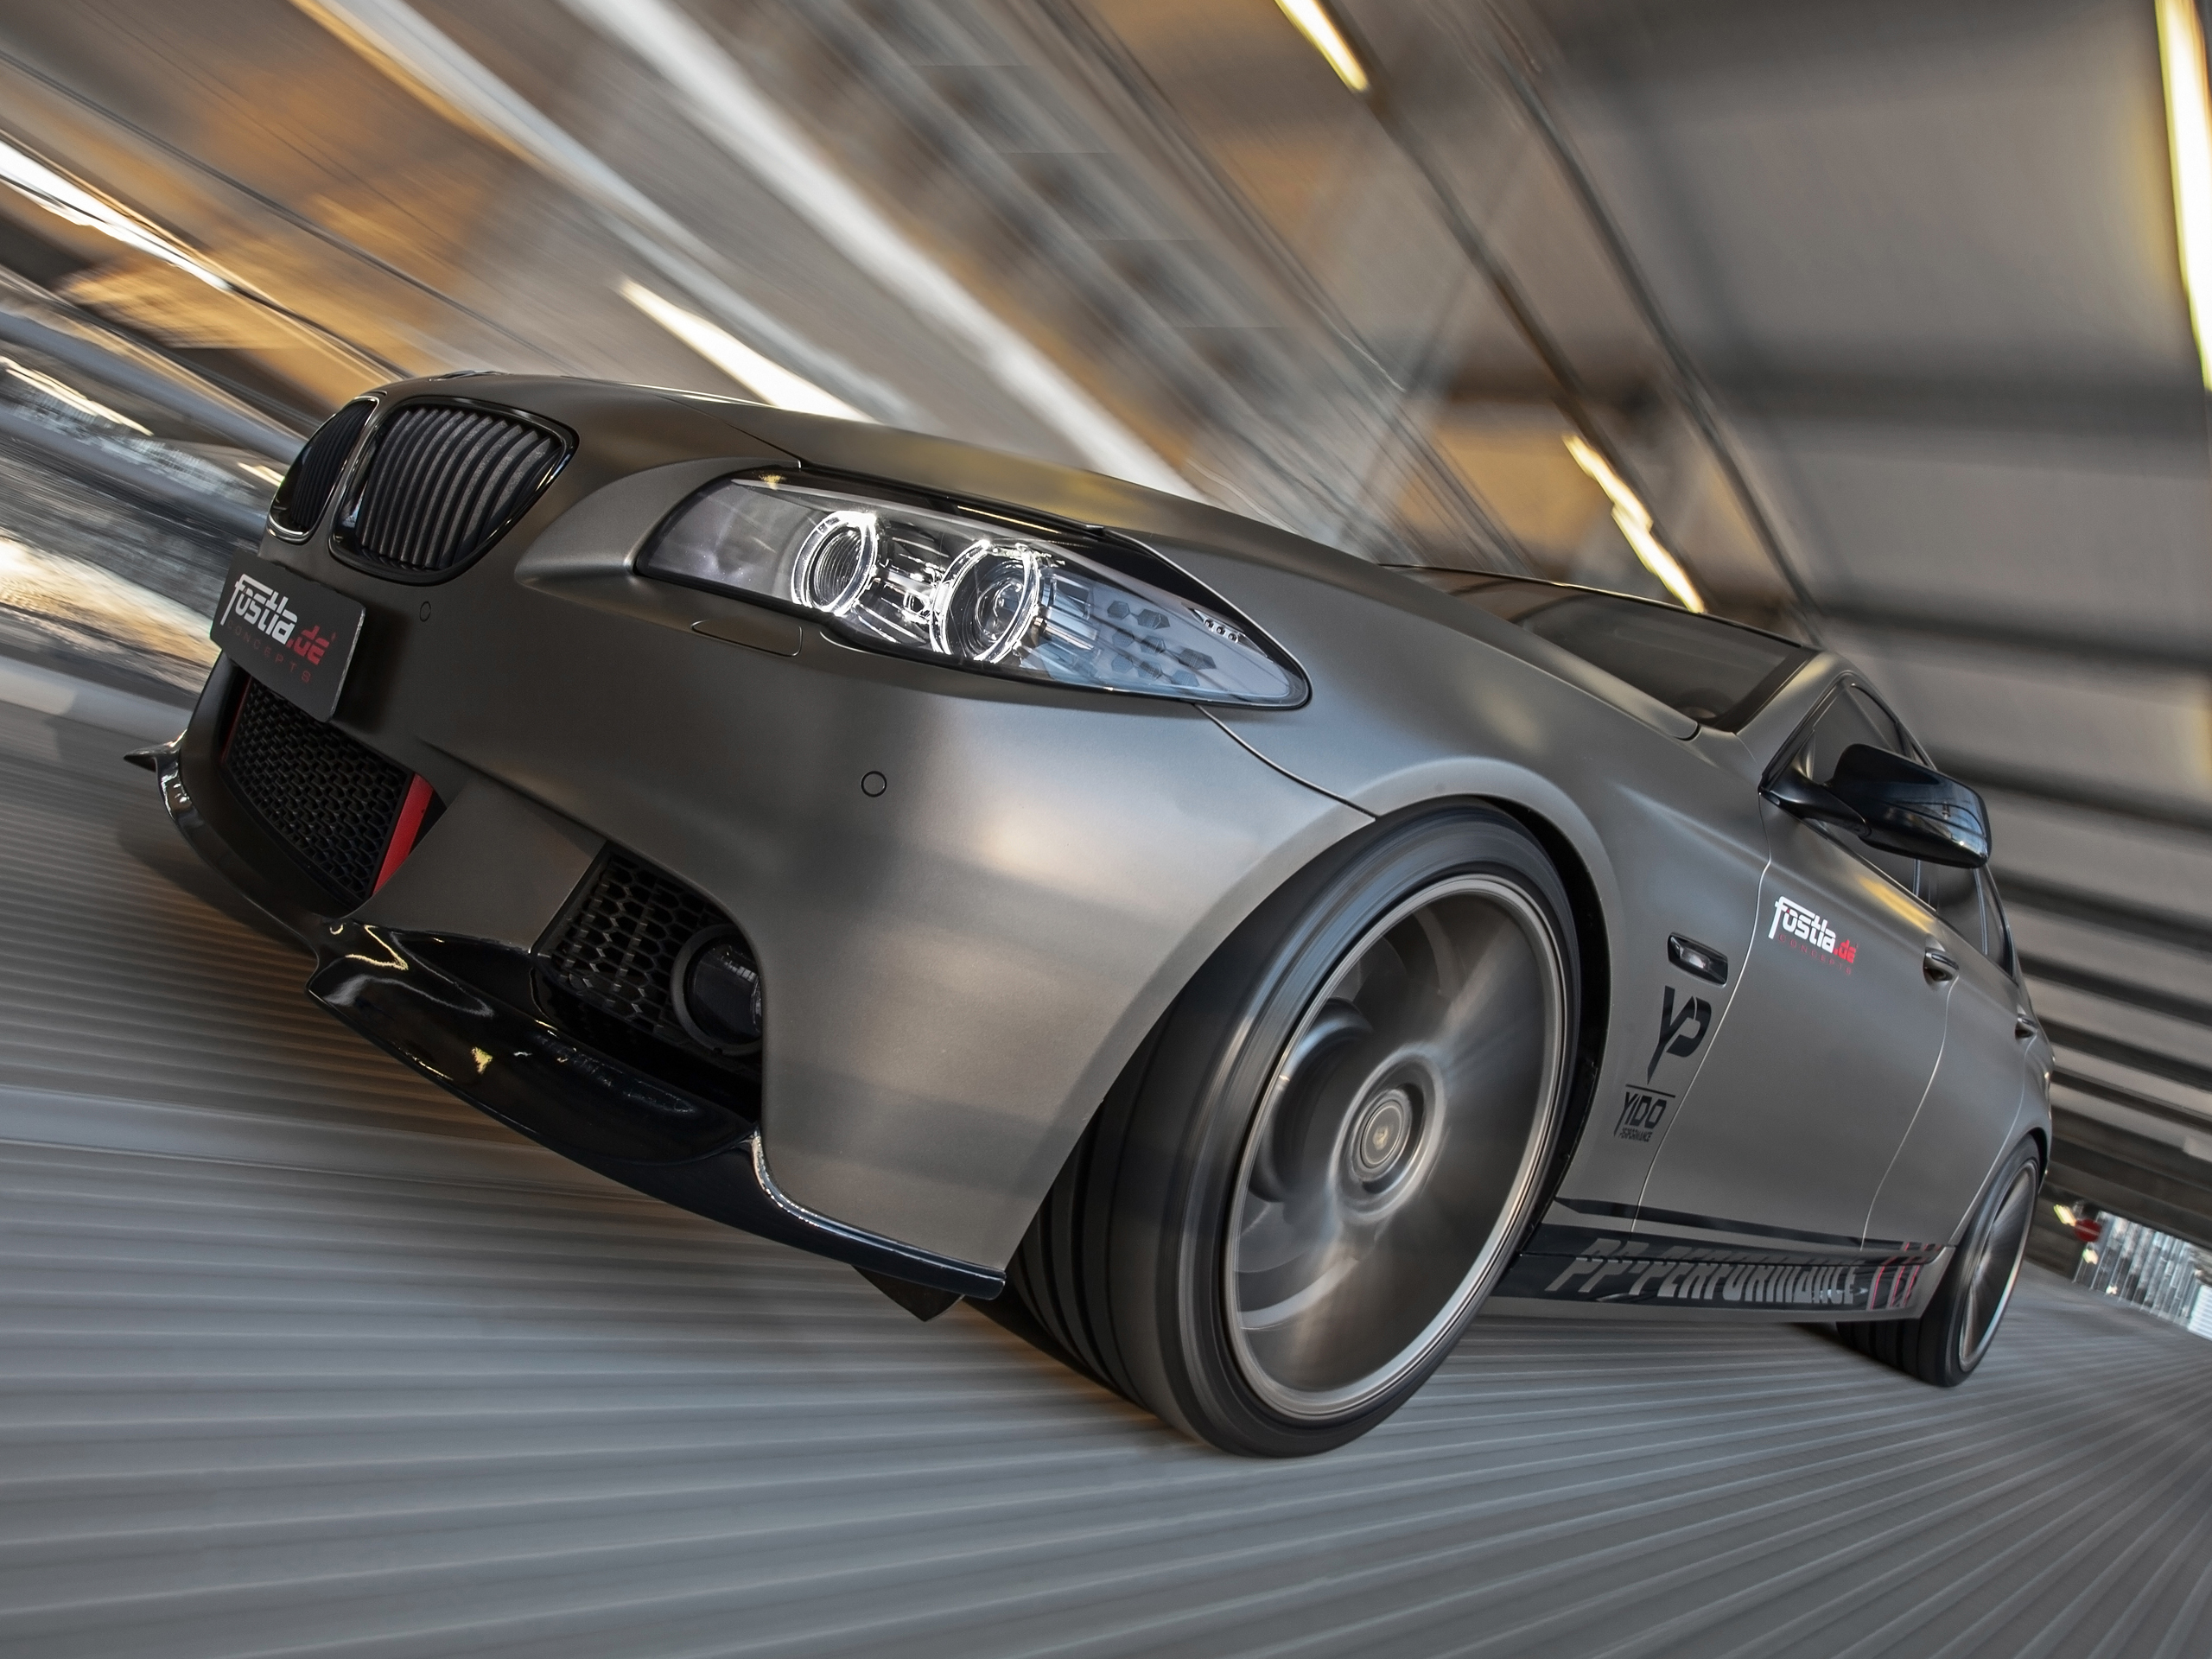 https://www.autozeitung.de/assets/gallery_images/2014/12/PP-Performance-BMW-5er-F10-Tuning-Folierung-fostla-550i-01.jpg